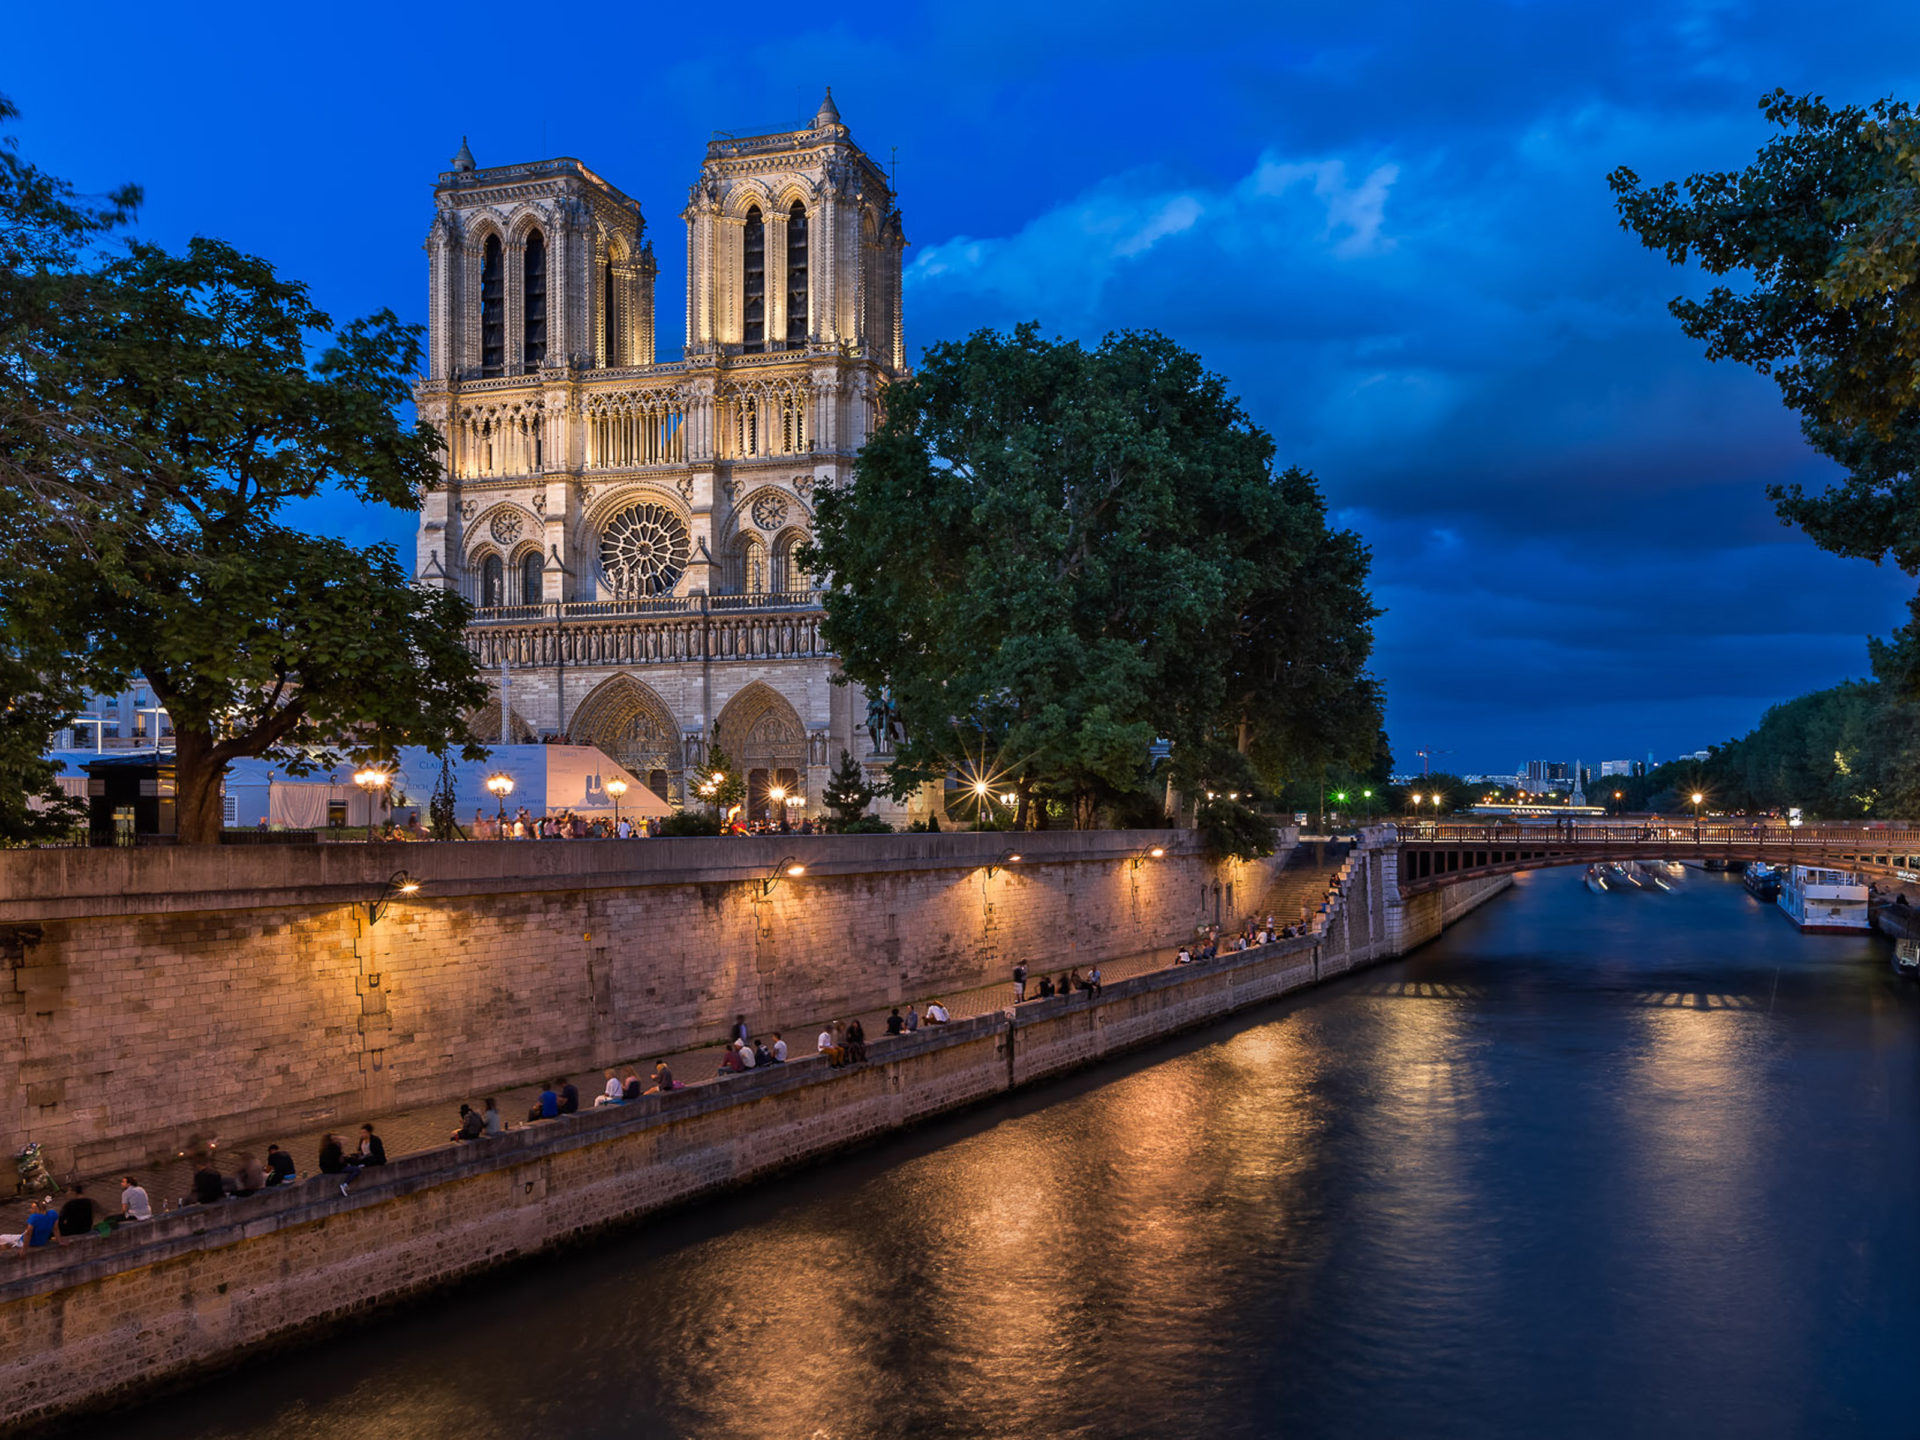 Paris: Seine river, France, The Cathedral of Notre Dame de Paris. 1920x1440 HD Wallpaper.